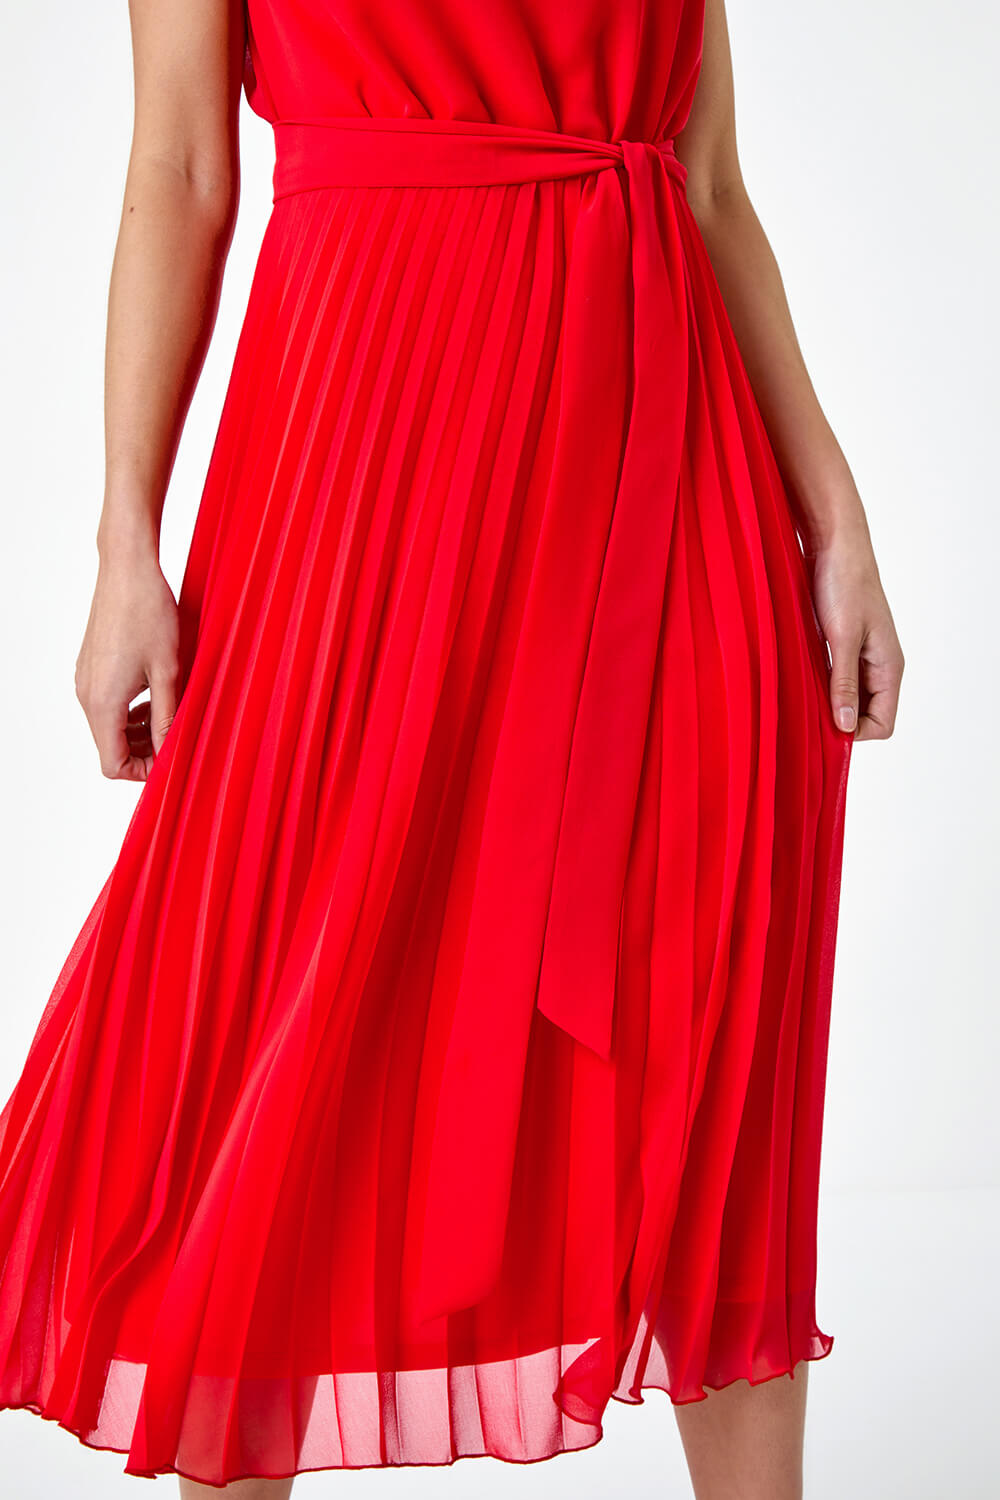 Red Petite Pleated Midi Dress, Image 5 of 5